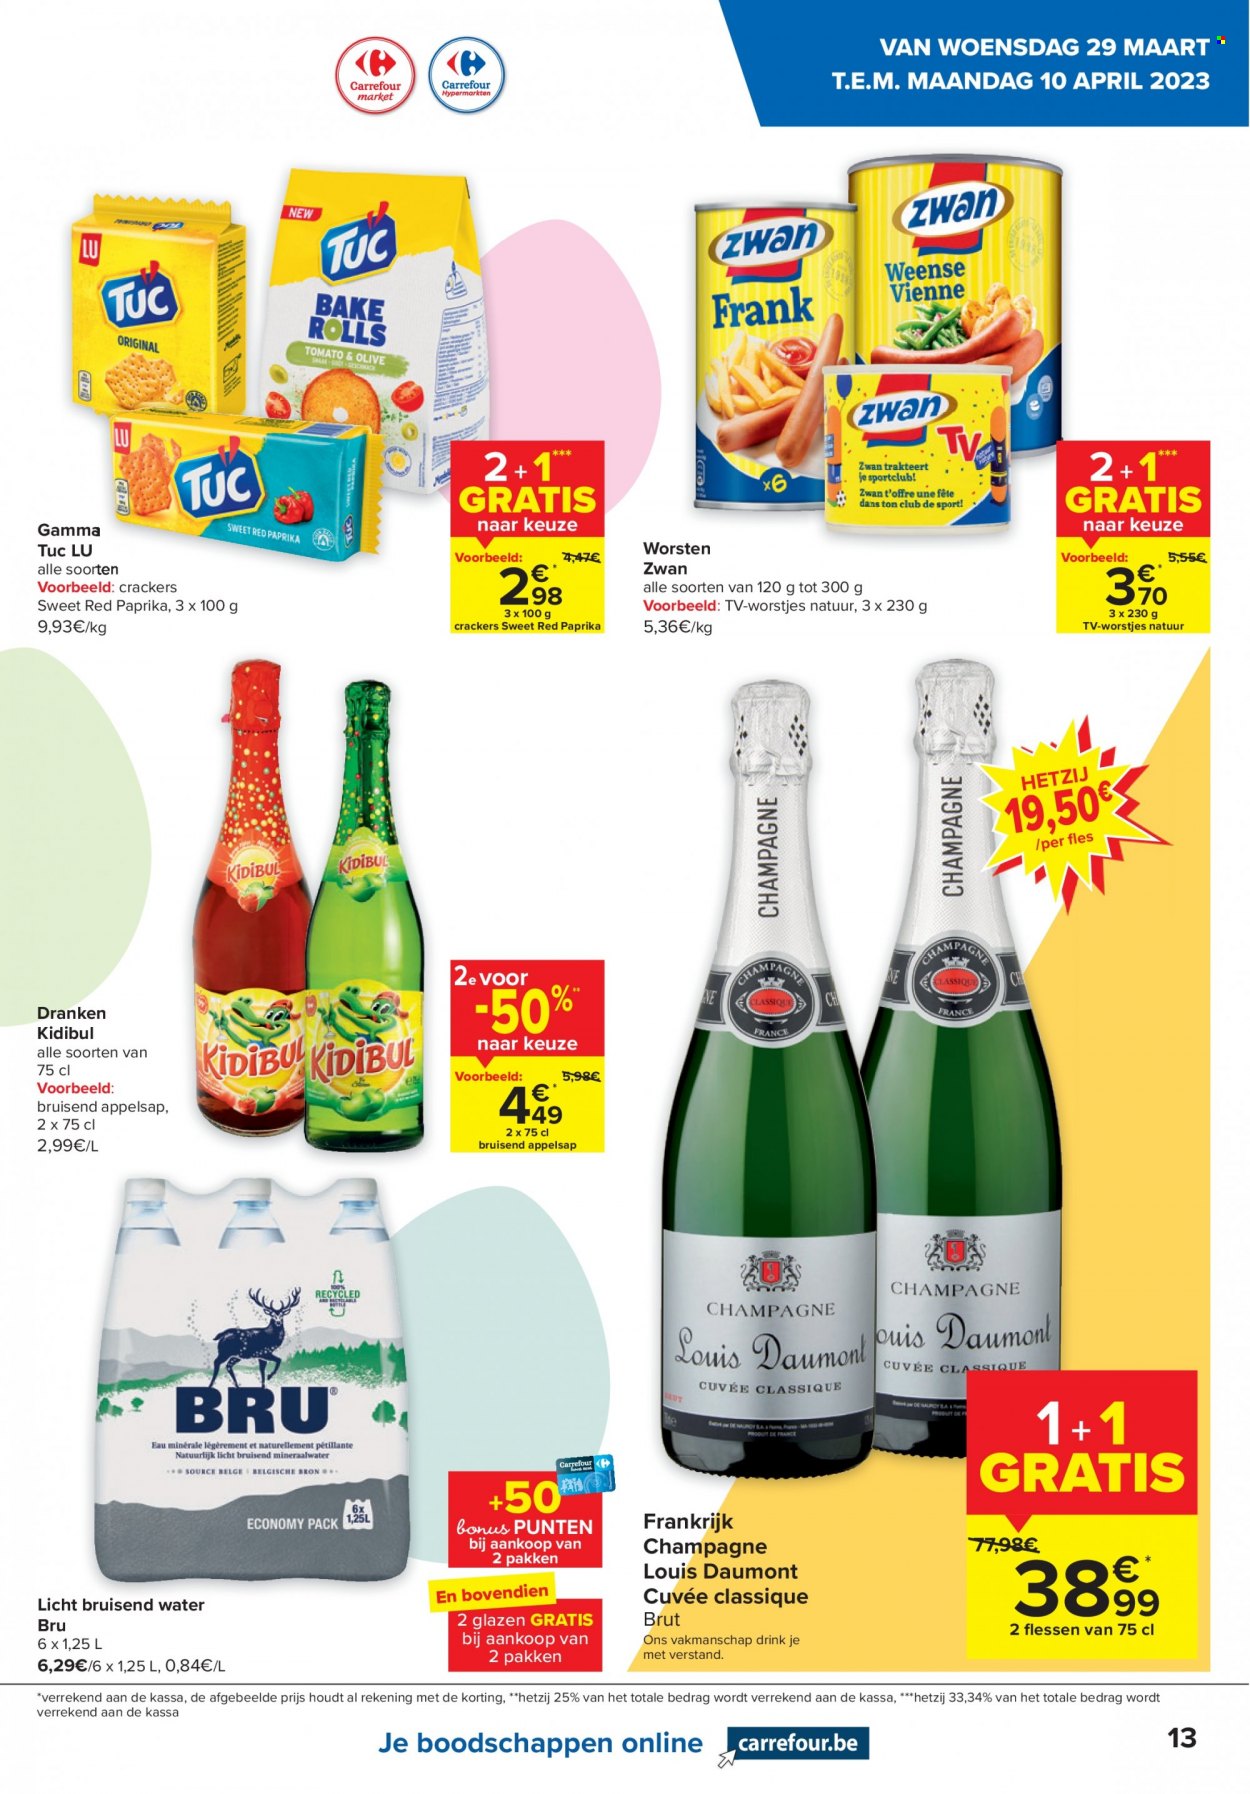 thumbnail - Catalogue Carrefour - 29/03/2023 - 10/04/2023 - Produits soldés - LU, crackers, TUC, champagne, alcool, téléviseur. Page 13.